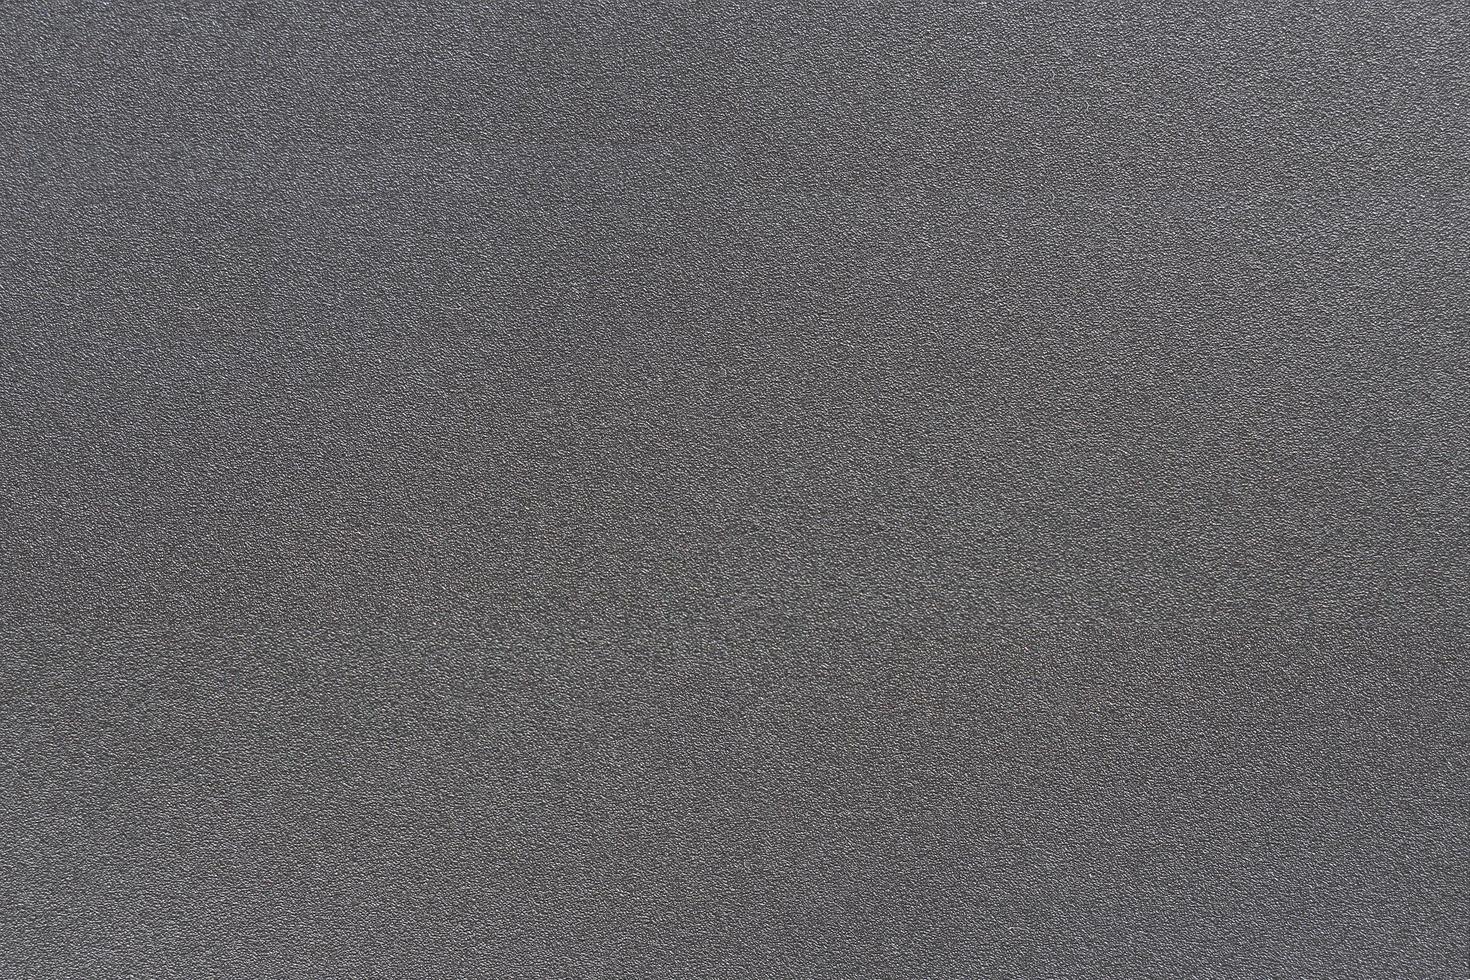 textur av metall mörk svart färg har grov yta, abstrakt bakgrund foto